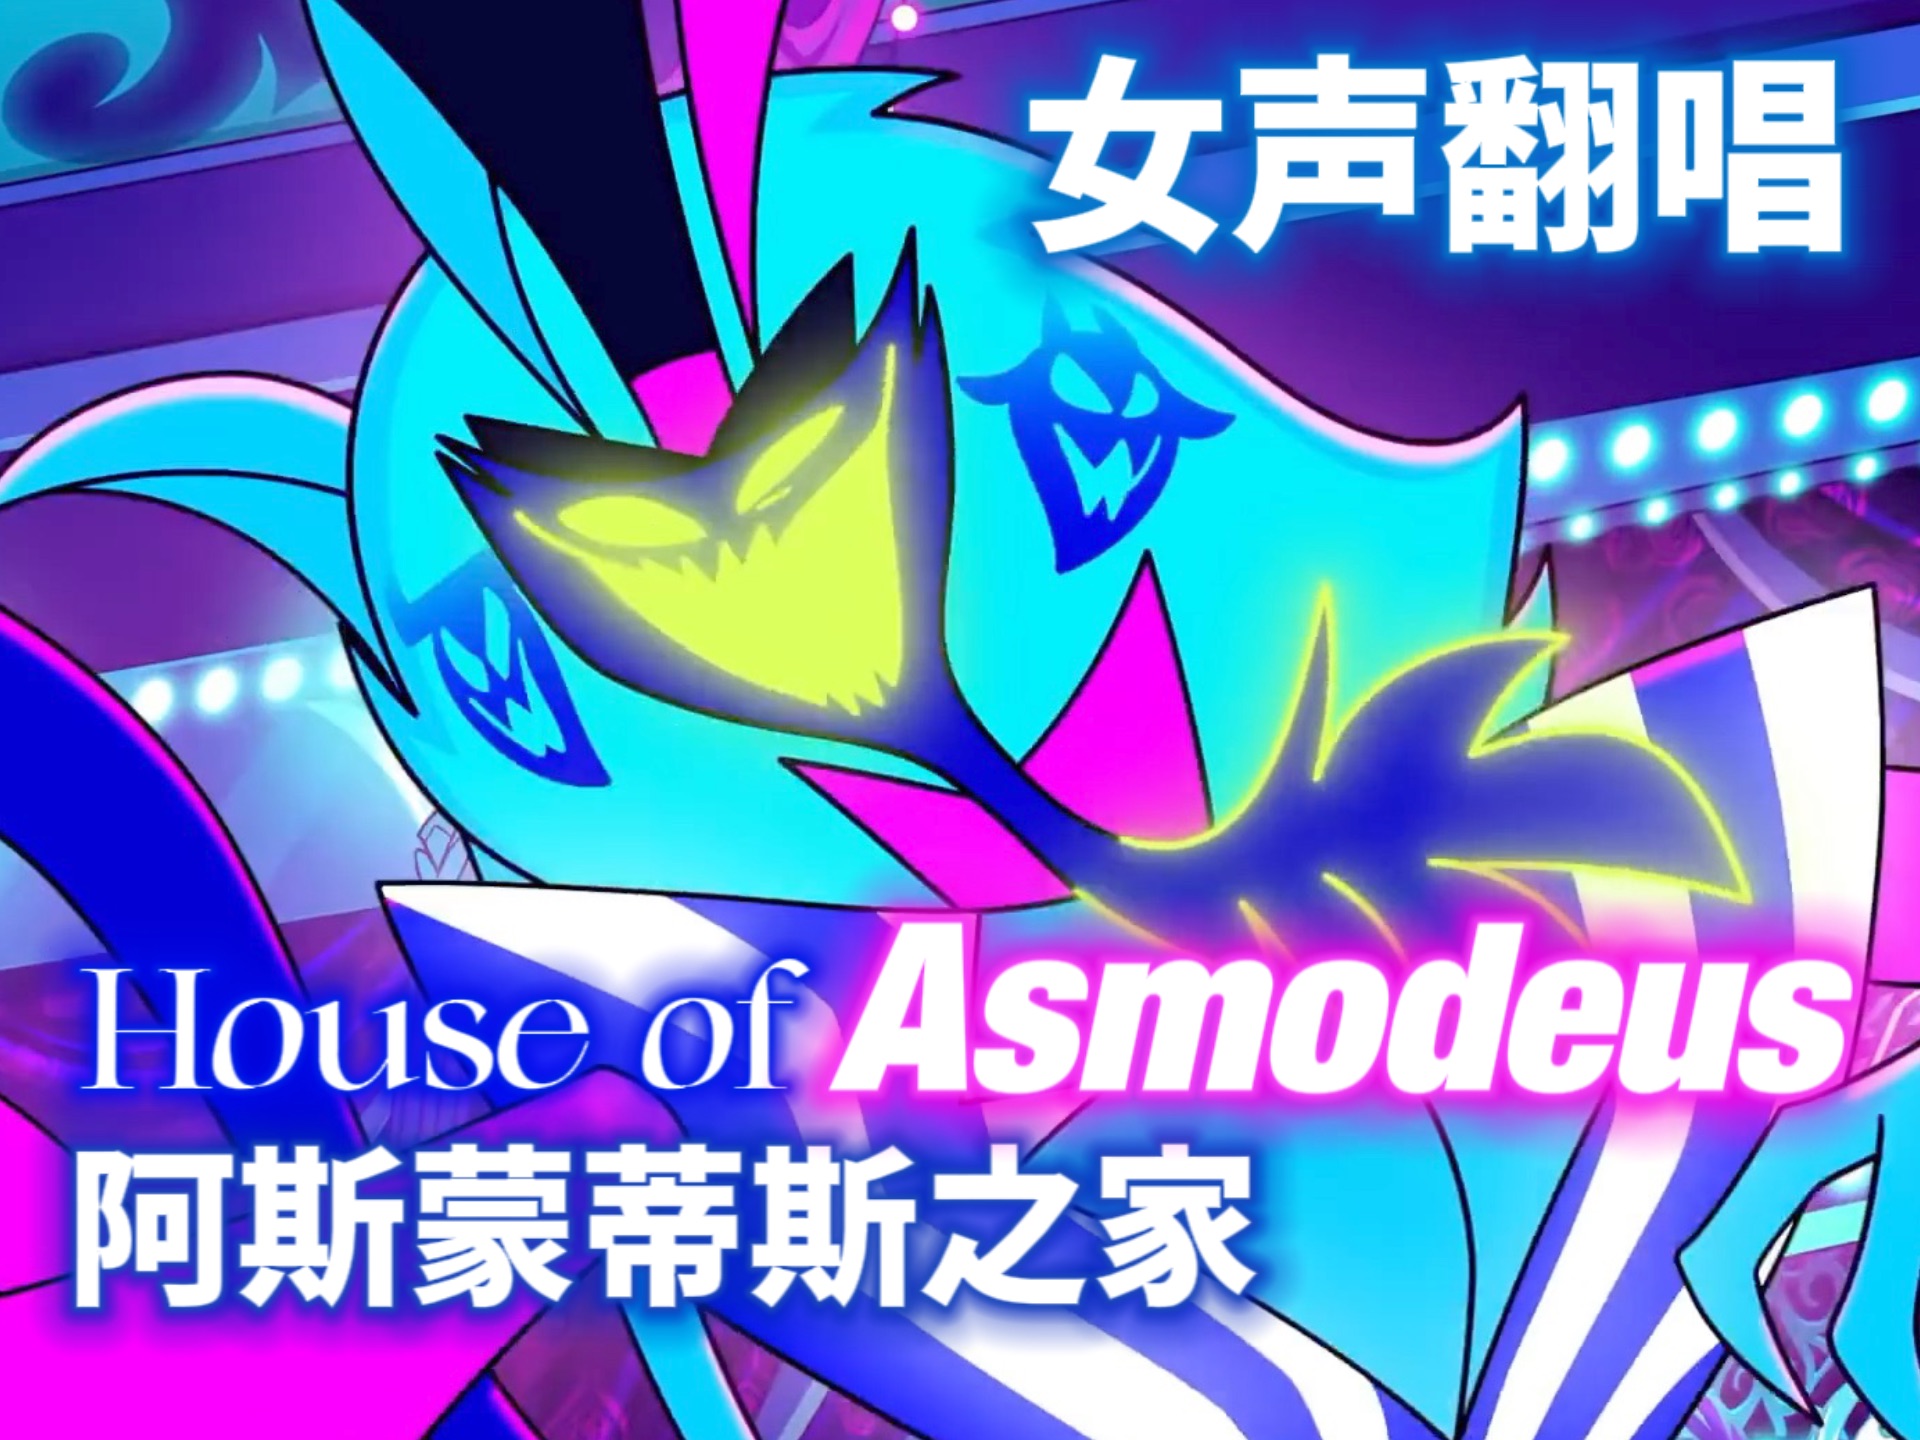 【女声翻唱】一人精分｜阿斯蒙蒂斯的爵士小曲House of Asmodeus